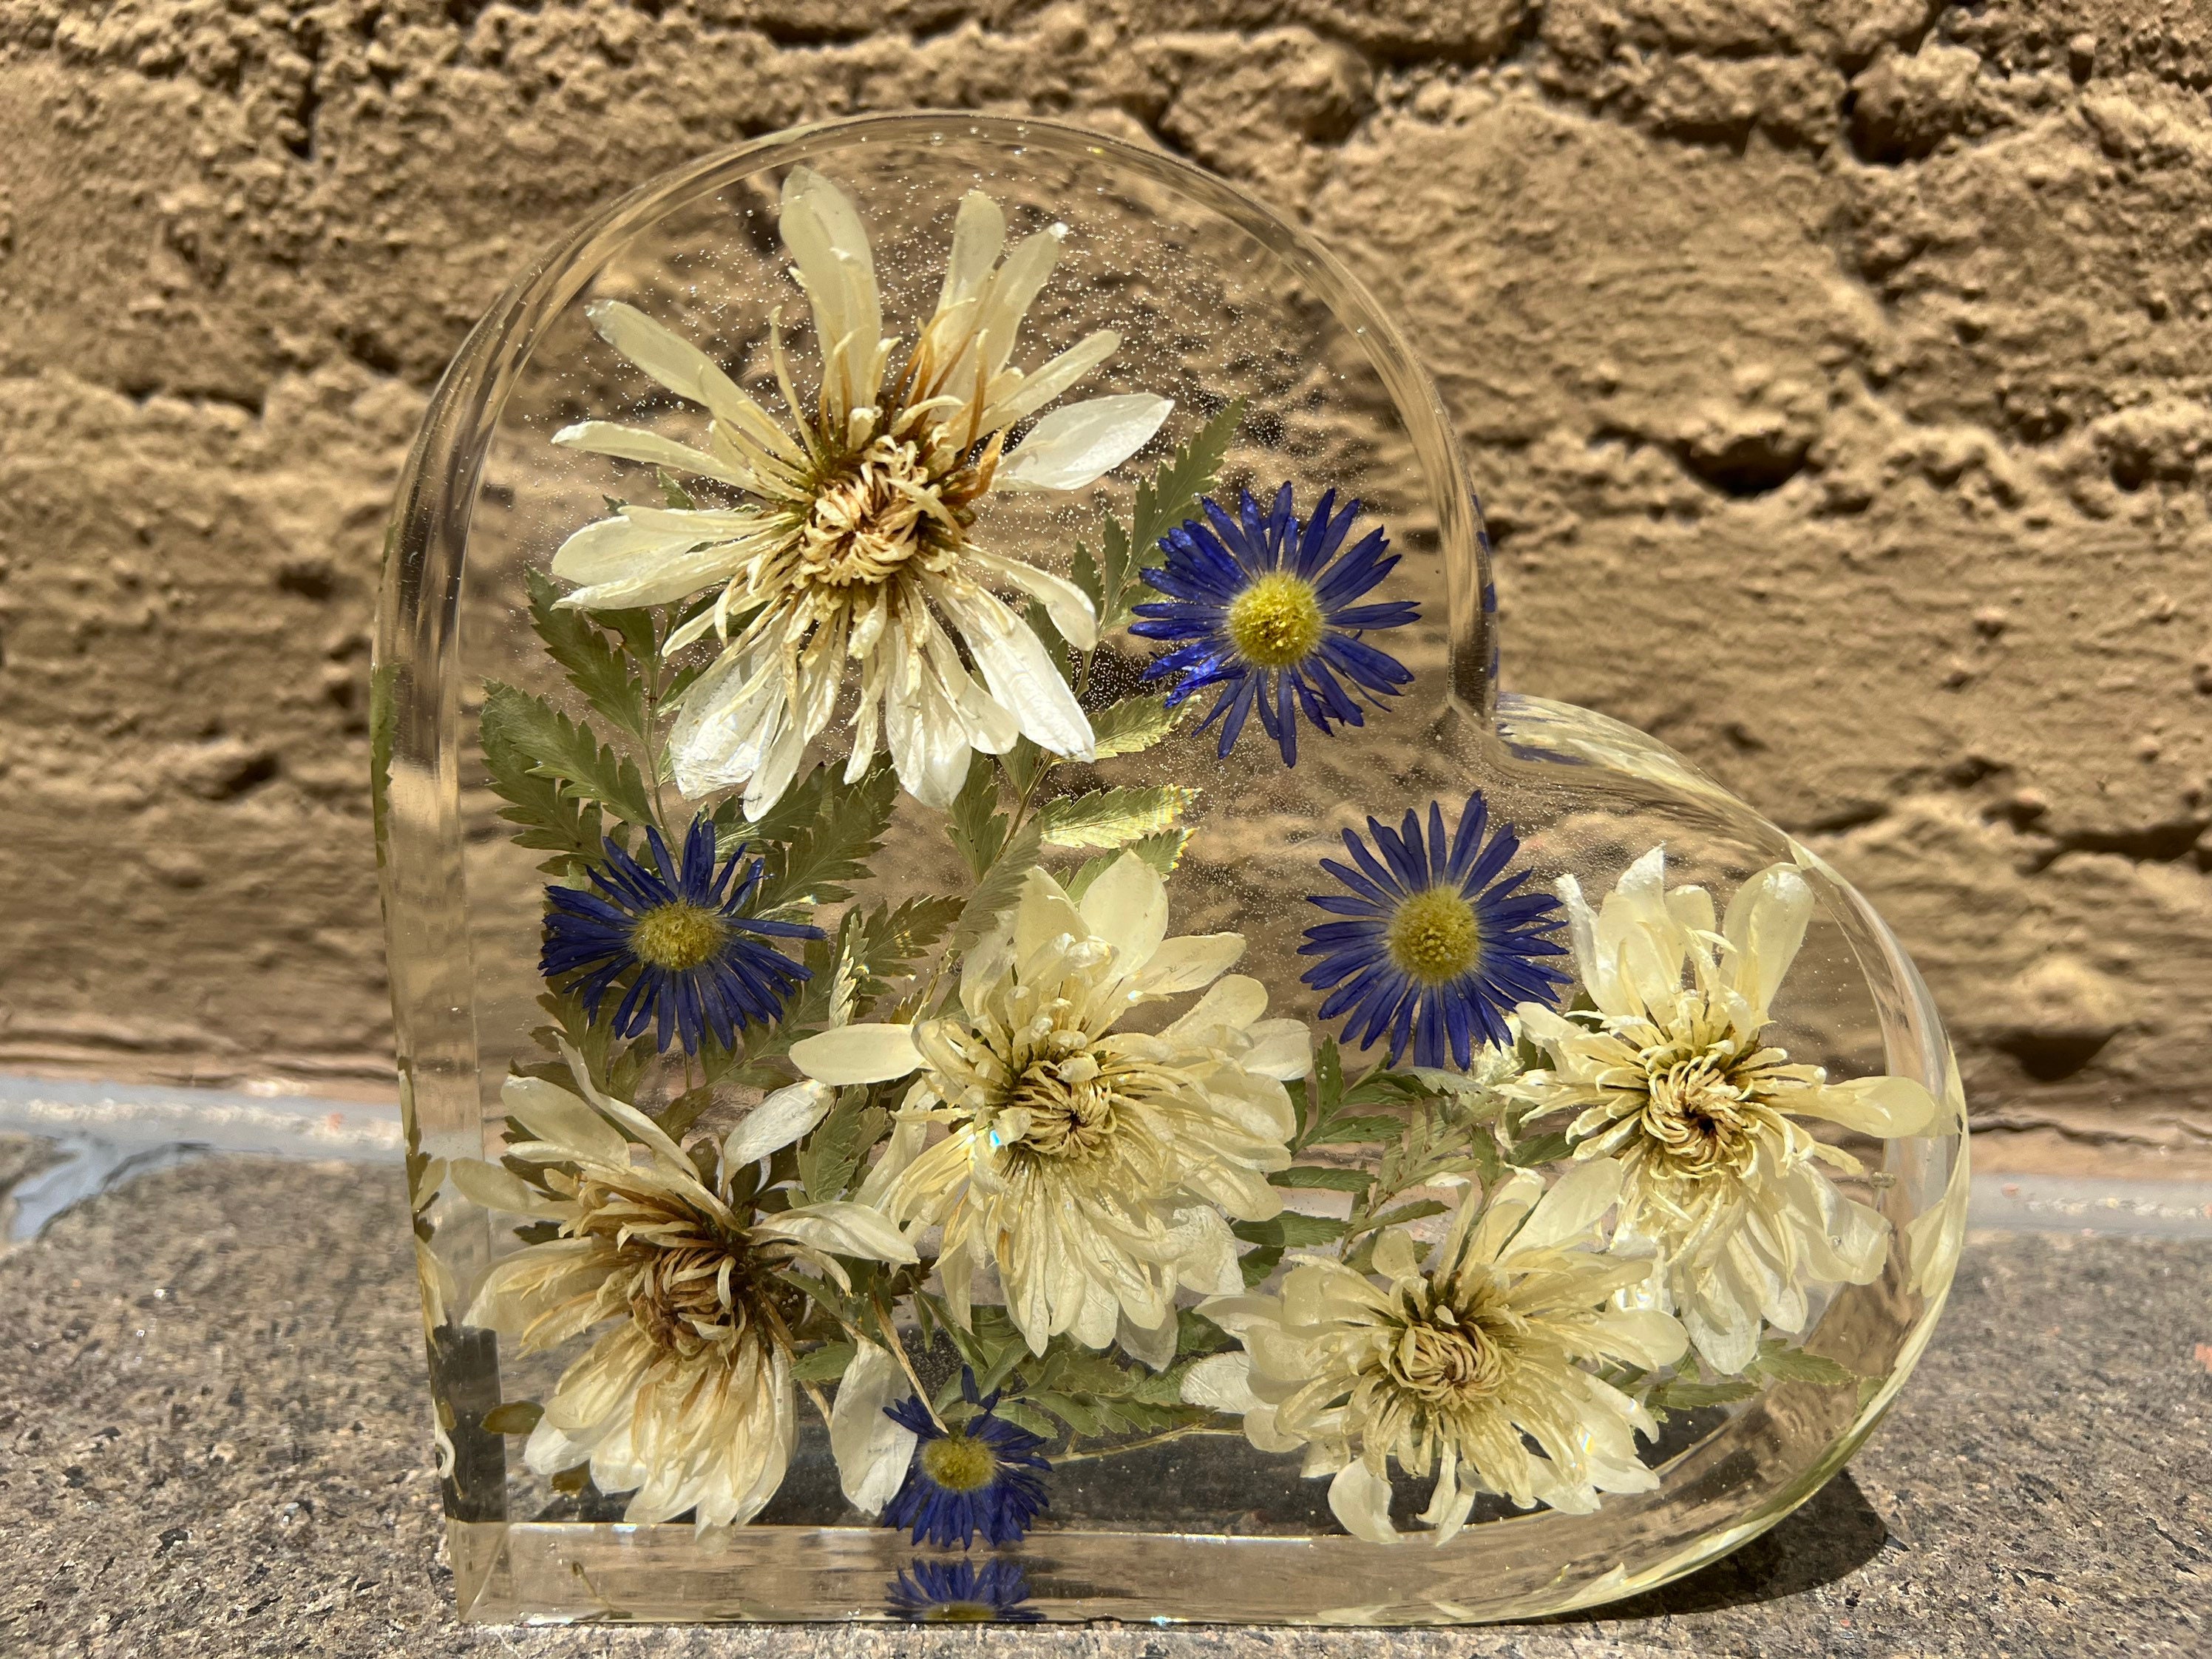 MOEYURO 3Pcs Resin Molds for Flower Preservation Kit India